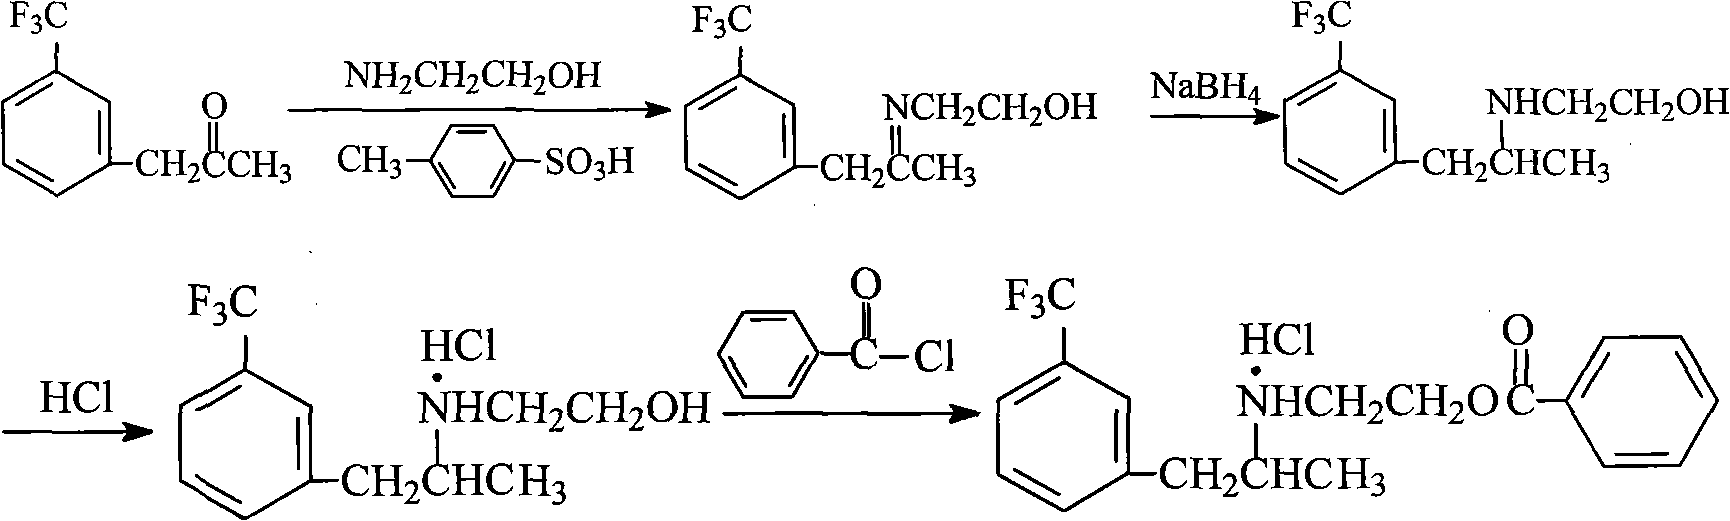 Method for preparing benzoic-2-[[1-methyl-2-[3-(trifluoromethyl)-phenyl] ethyl] amido] ethyl ester hydrochlorate